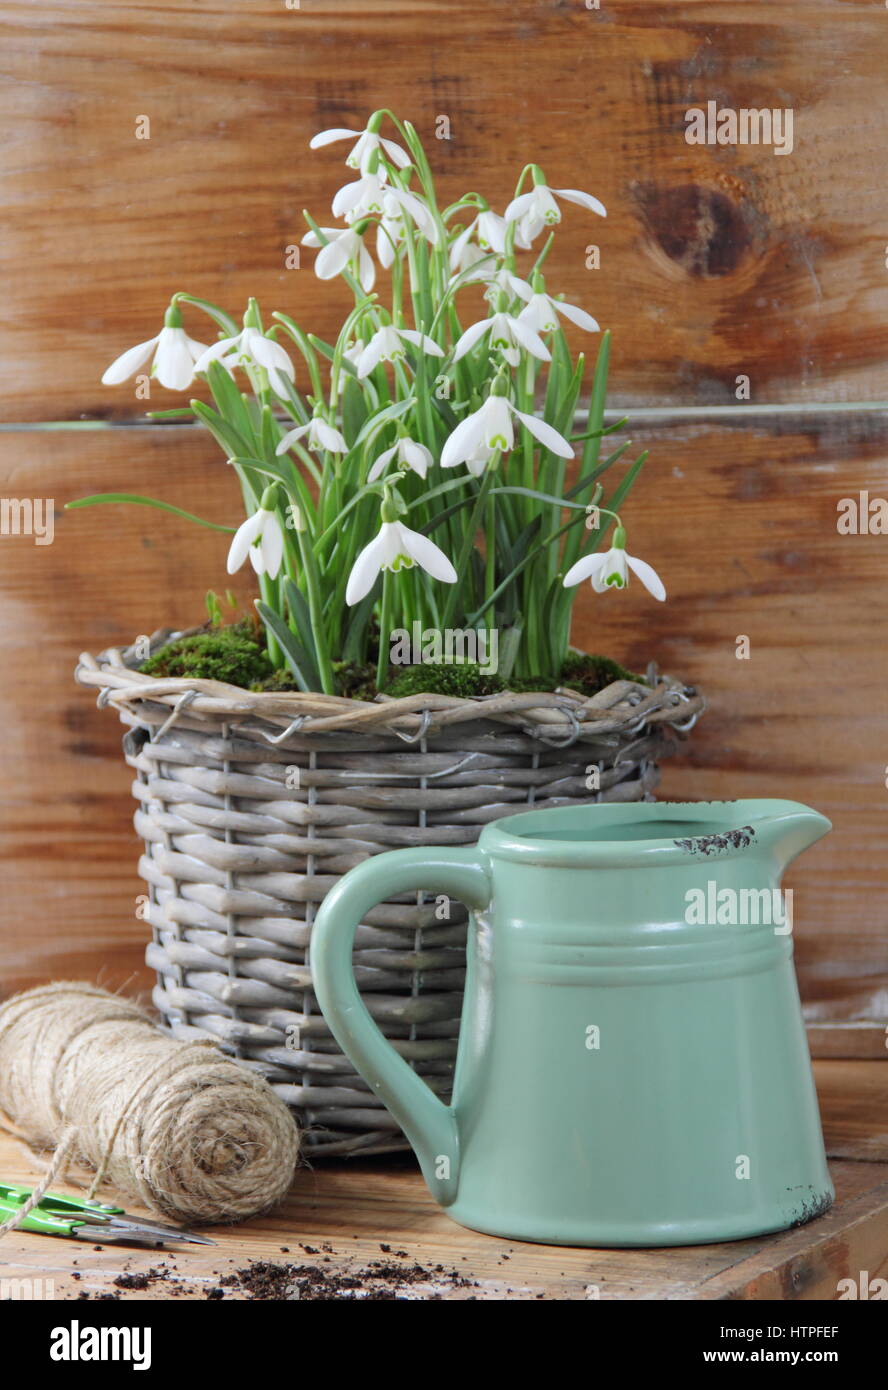 Tissé décoratif pot pour écrans d'intérieur planté de perce-neige (Galanthus nivalis) sur une table en bois avec une cisaille de jardin, chaîne et joli pot émaillé Banque D'Images